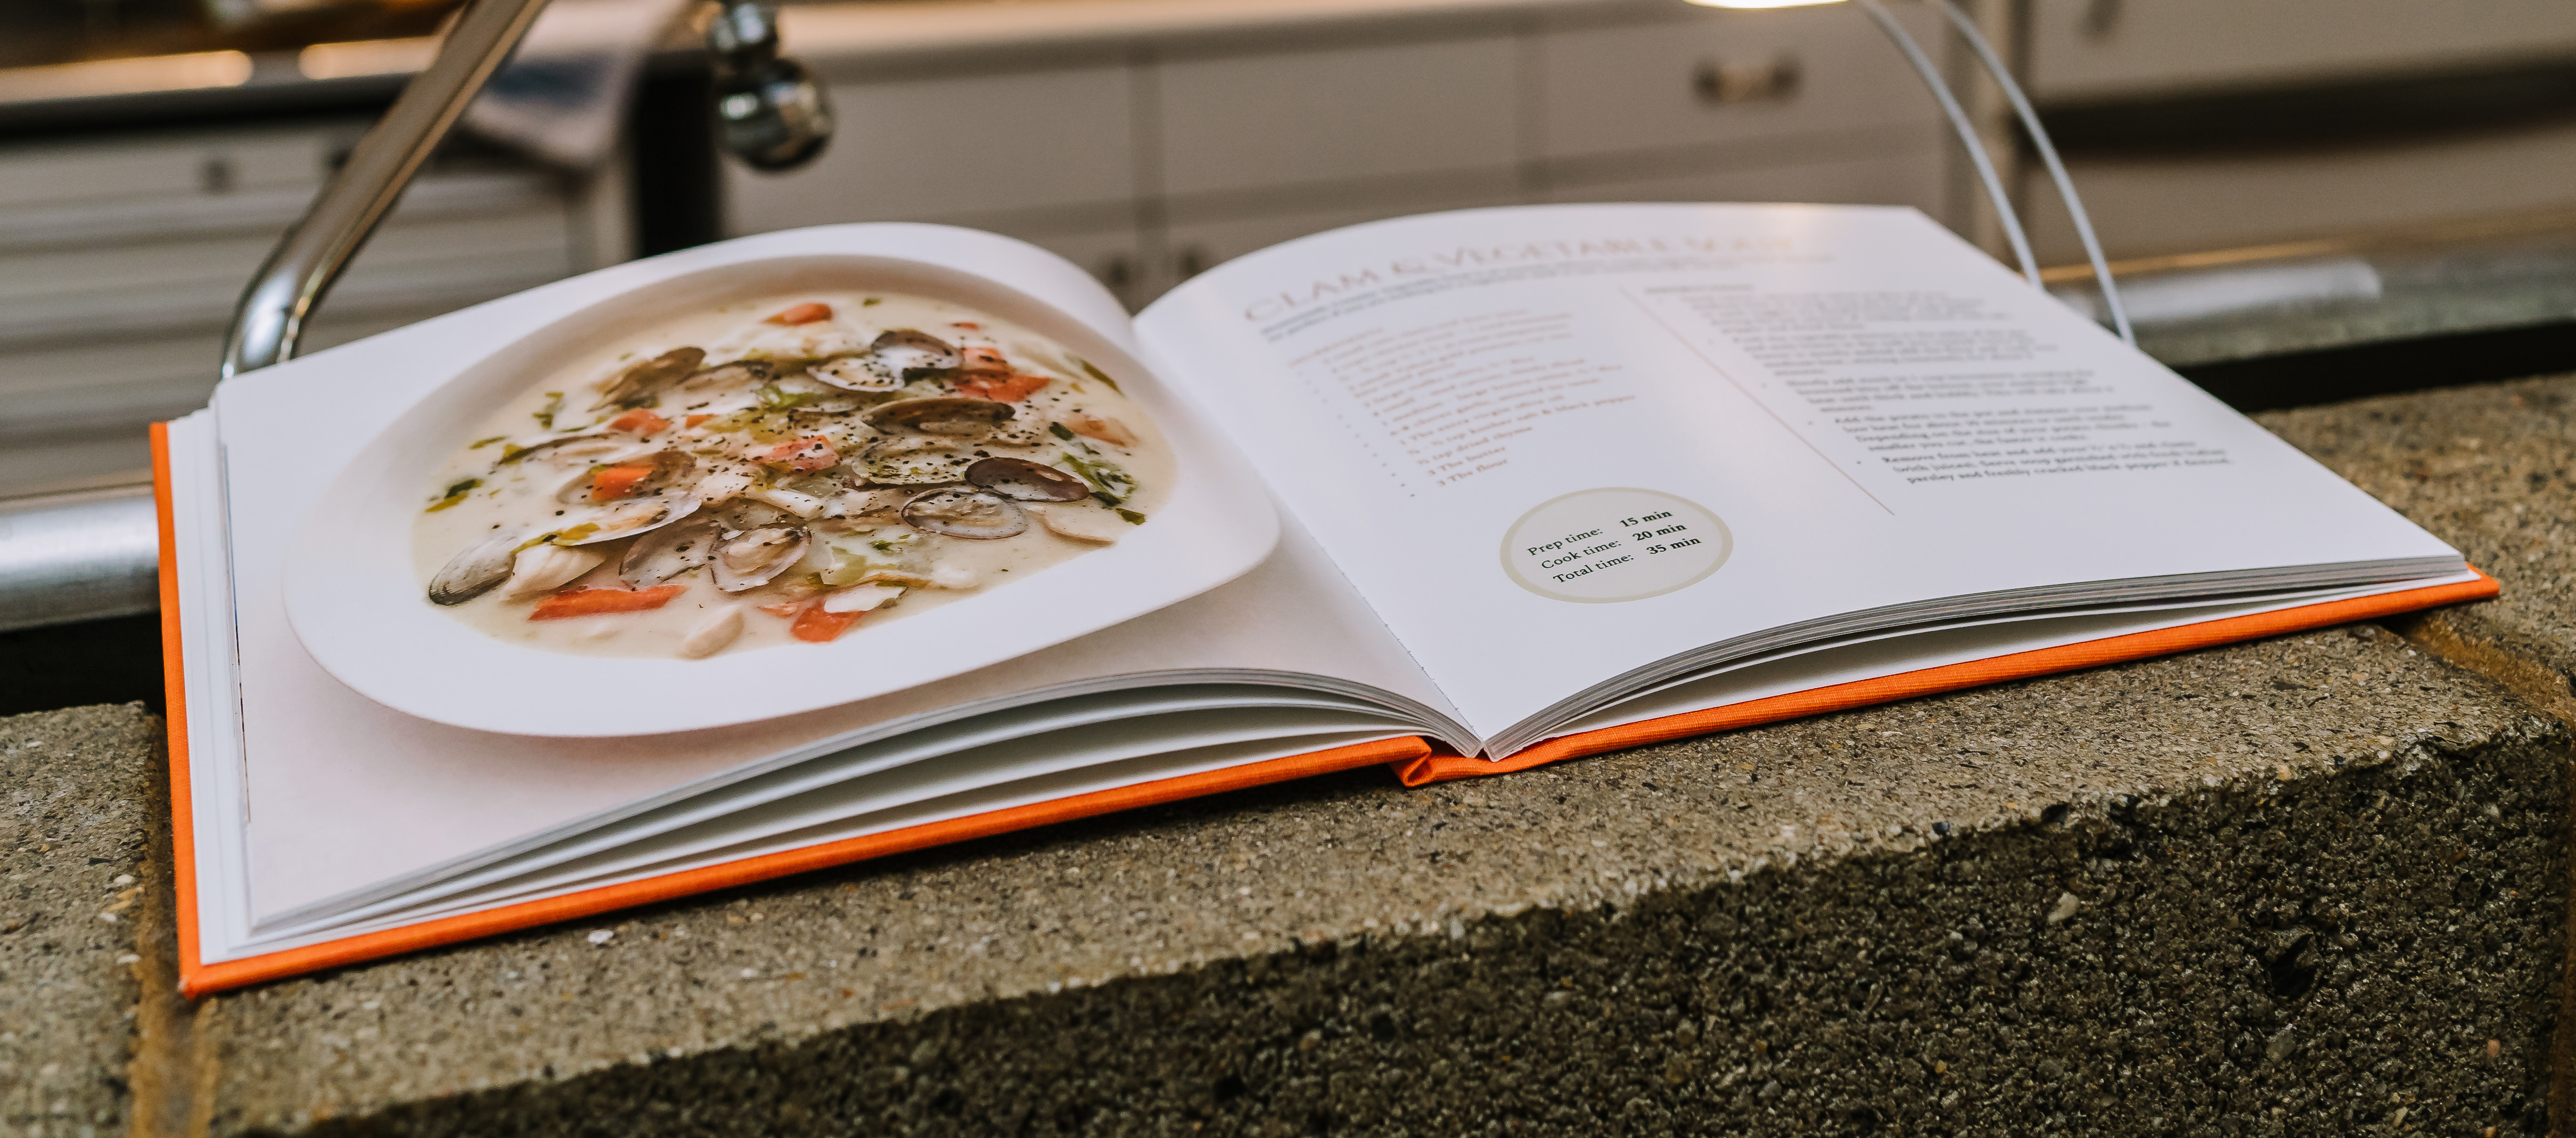 Individuell gestaltetes Rezeptfotobuch mit Rezept für Muschelsuppe